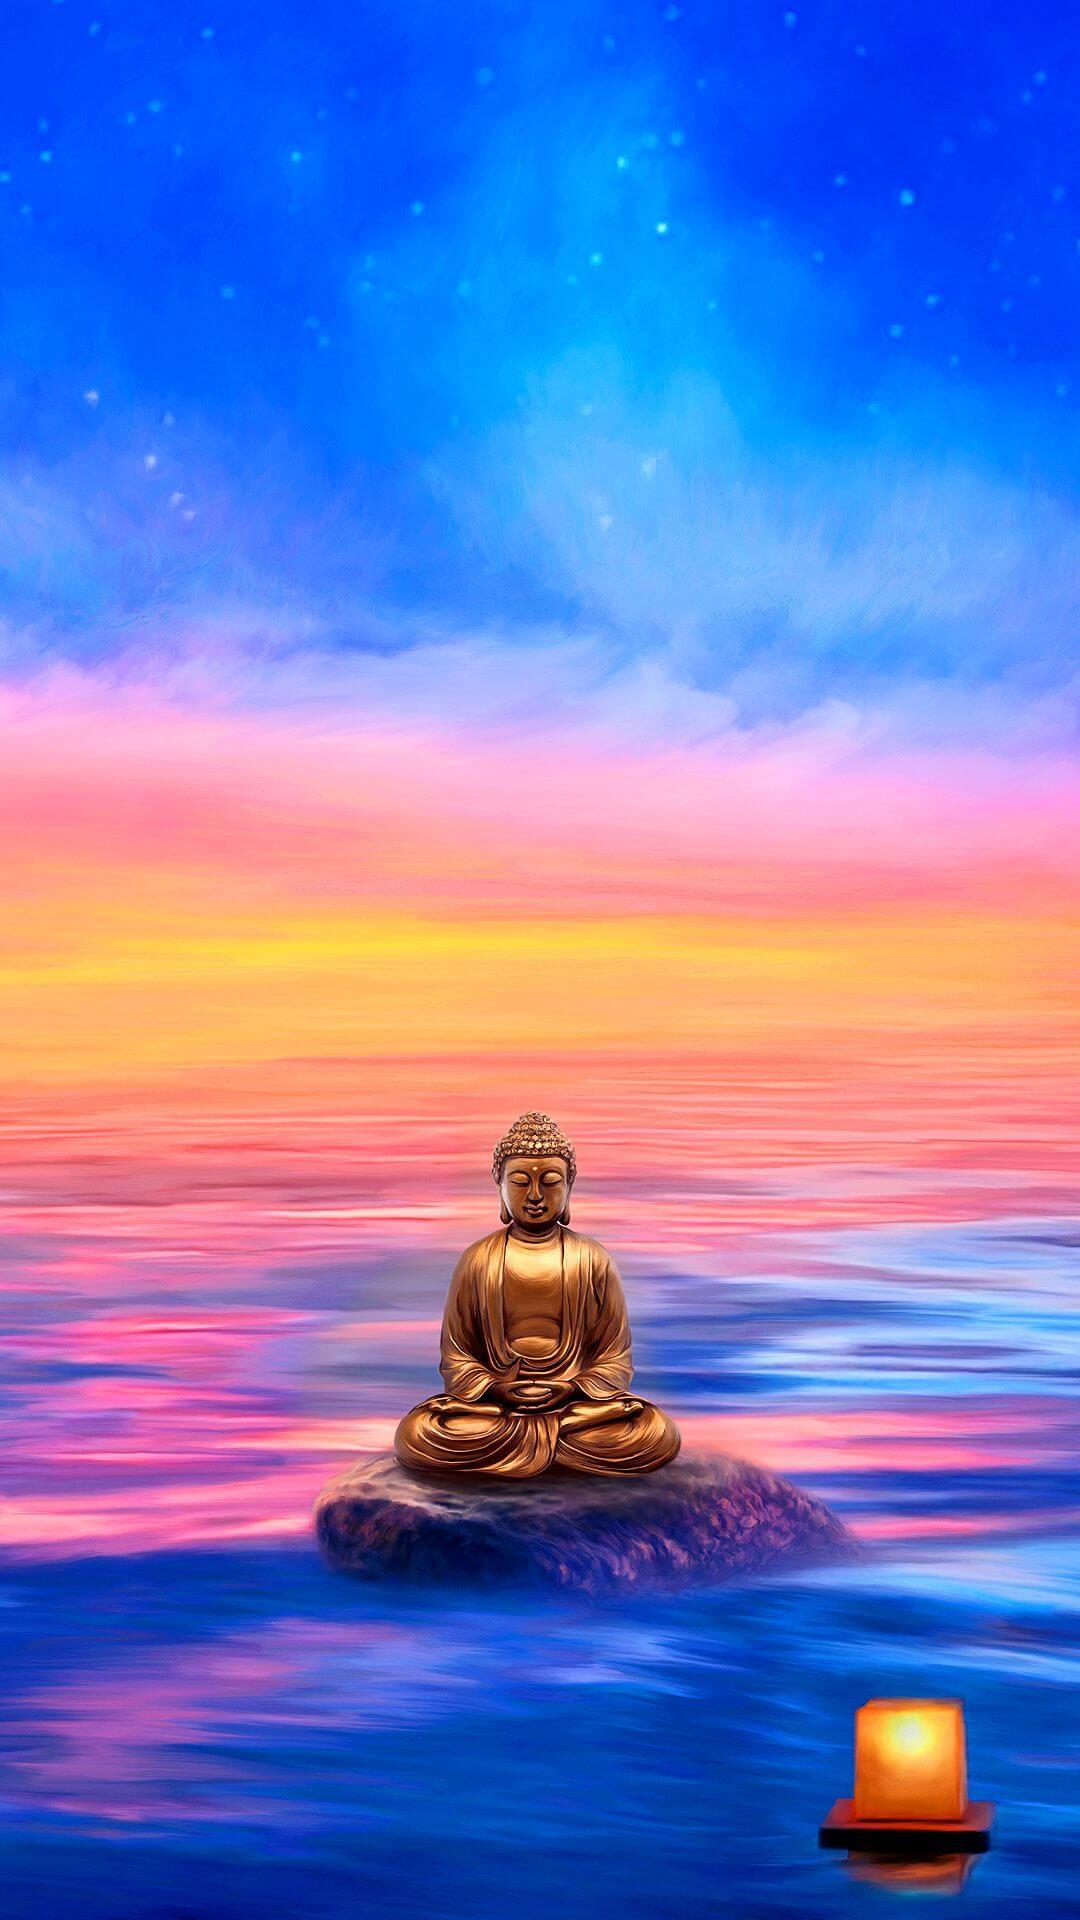 Ảnh Phật làm hình nền điện thoại sẽ mang lại cảm giác thanh tịnh và tâm hồn an nhiên cho bạn. Những hình ảnh tuyệt đẹp này sẽ mang lại khoảnh khắc thư giãn và hạnh phúc. Hãy thưởng thức những hình ảnh này để thấy được sự khác biệt.